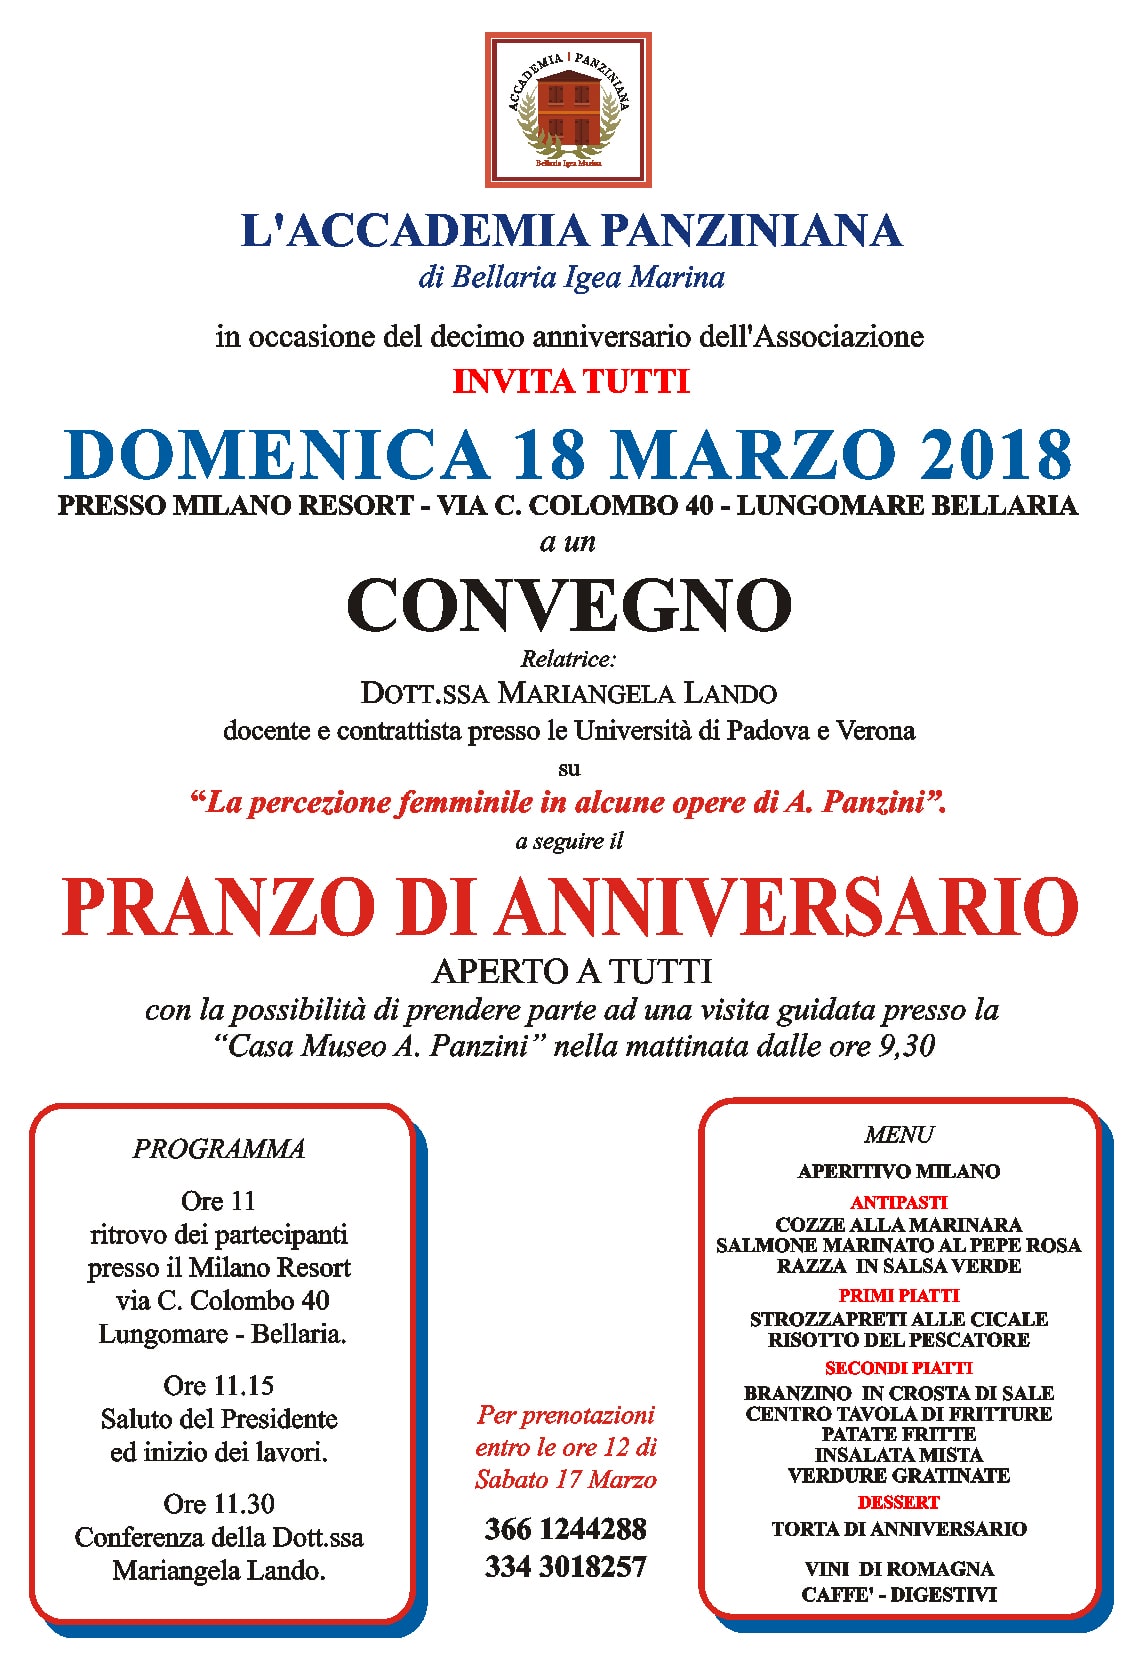 18 marzo: convegno e pranzo di anniversario per i 10 anni dell’Accademia Panziniana